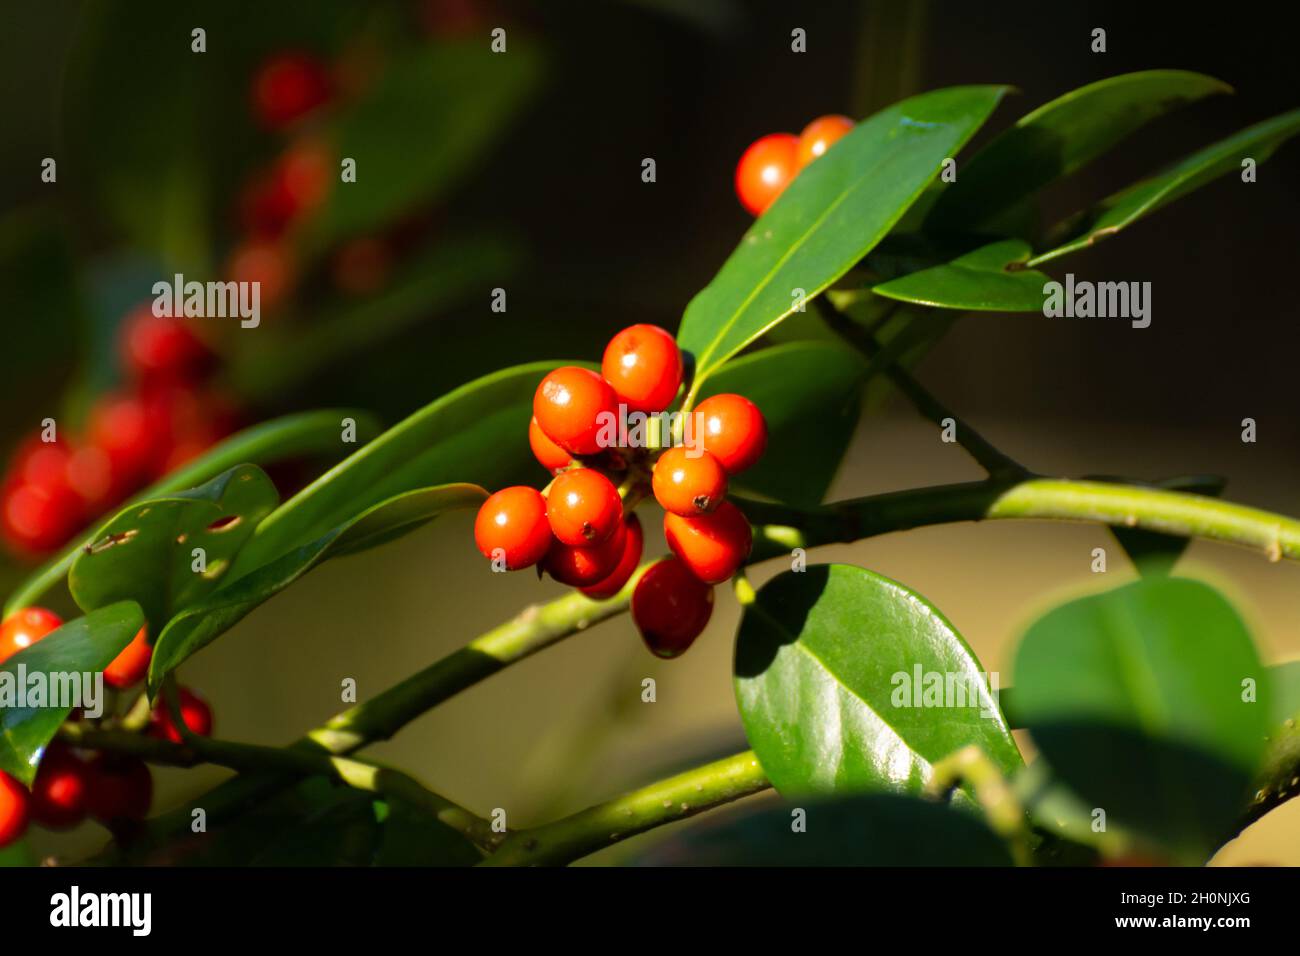 Red ripe berries of ilex aquifolium plant in autumn Stock Photo